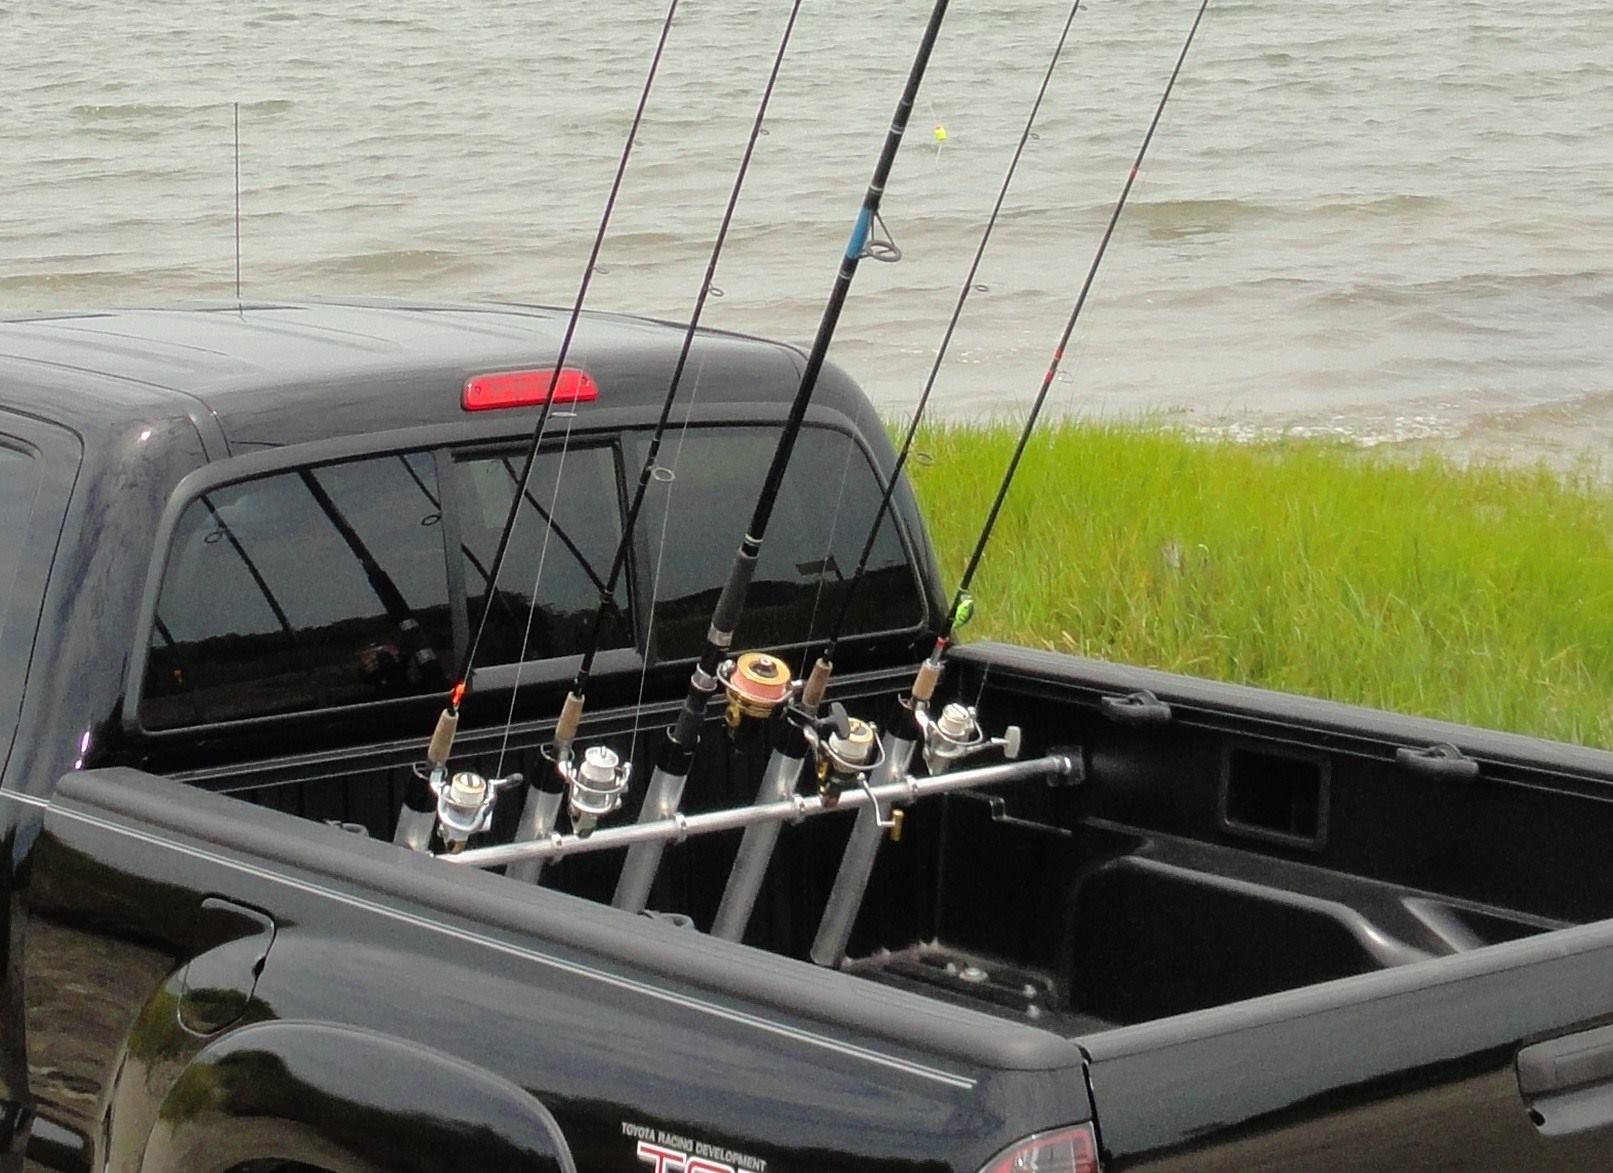 Truck rod holder, Truck fishing rod holder, fishing rod holder for truck